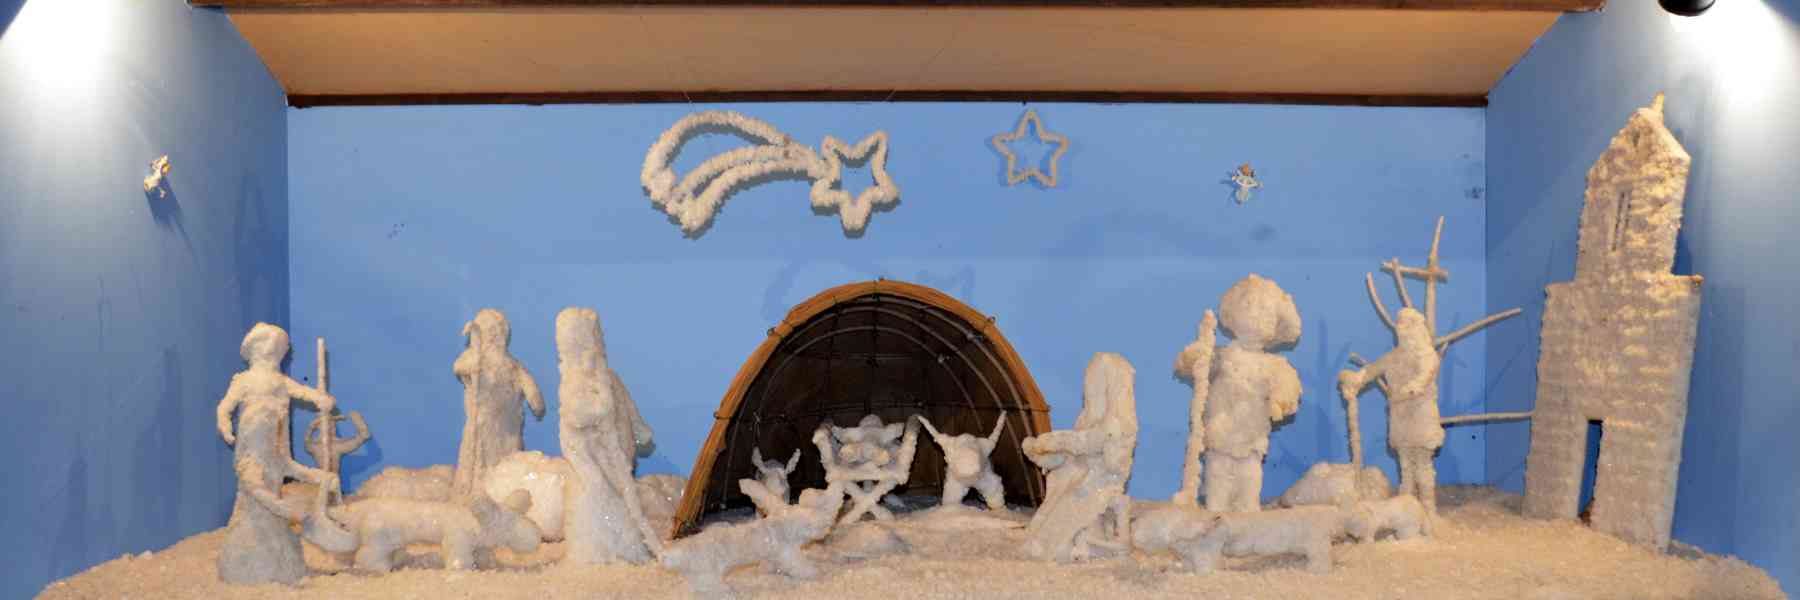 Musa nativity scenes